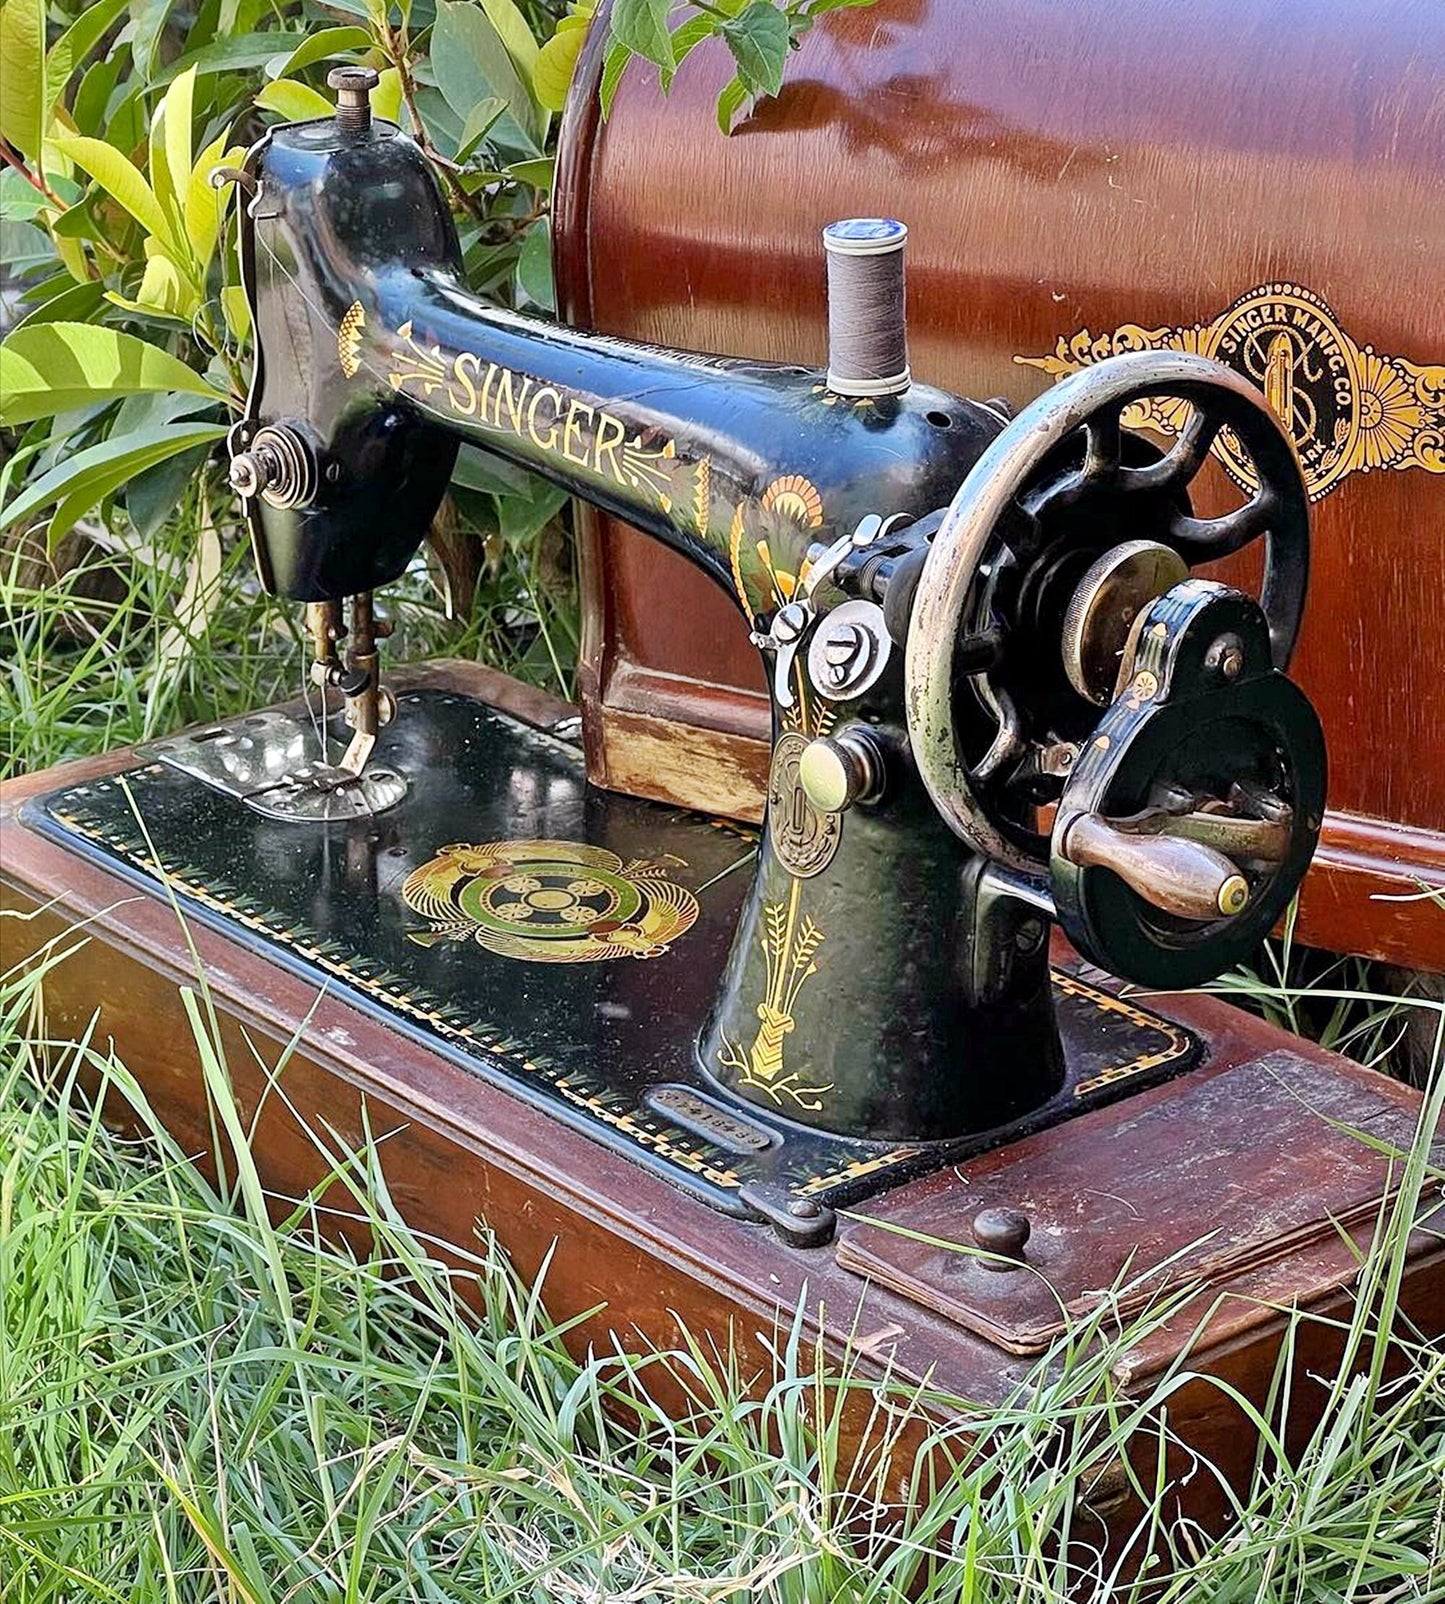 Singer Sewing Machine|